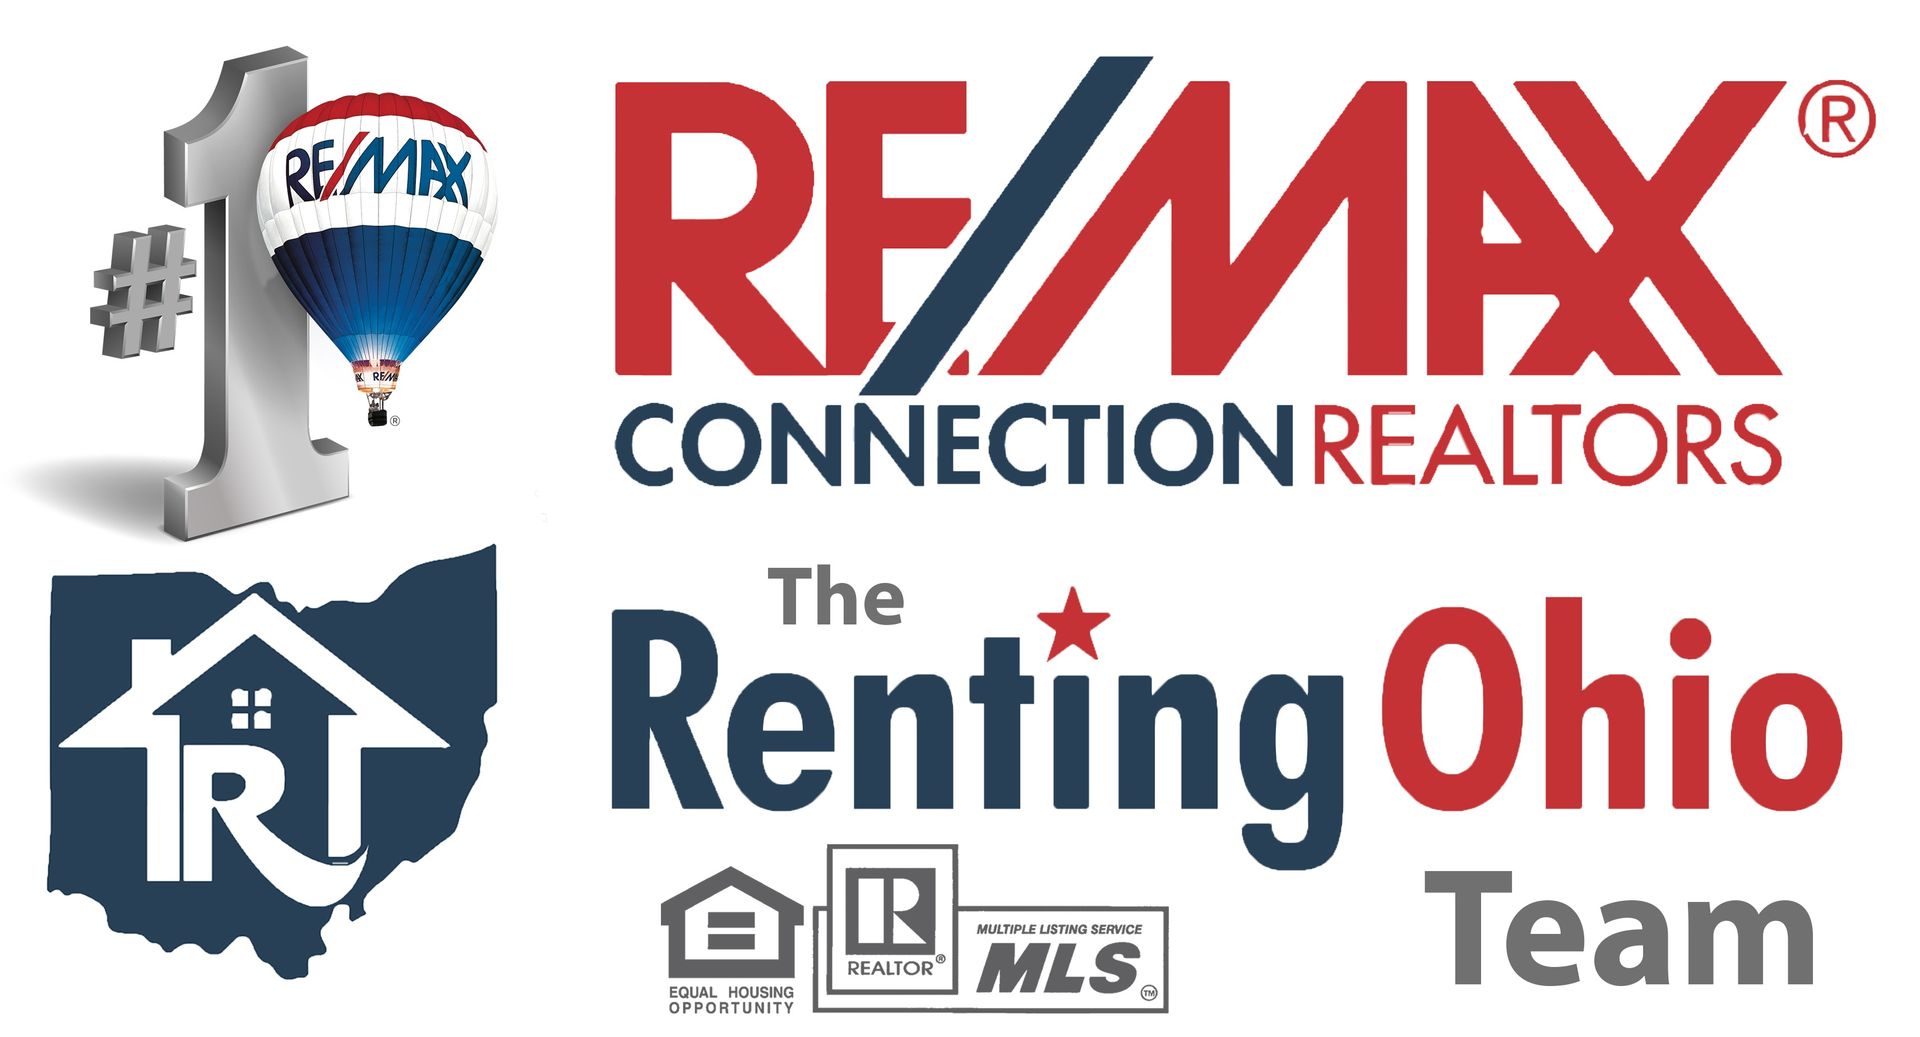 Renting Ohio Logo